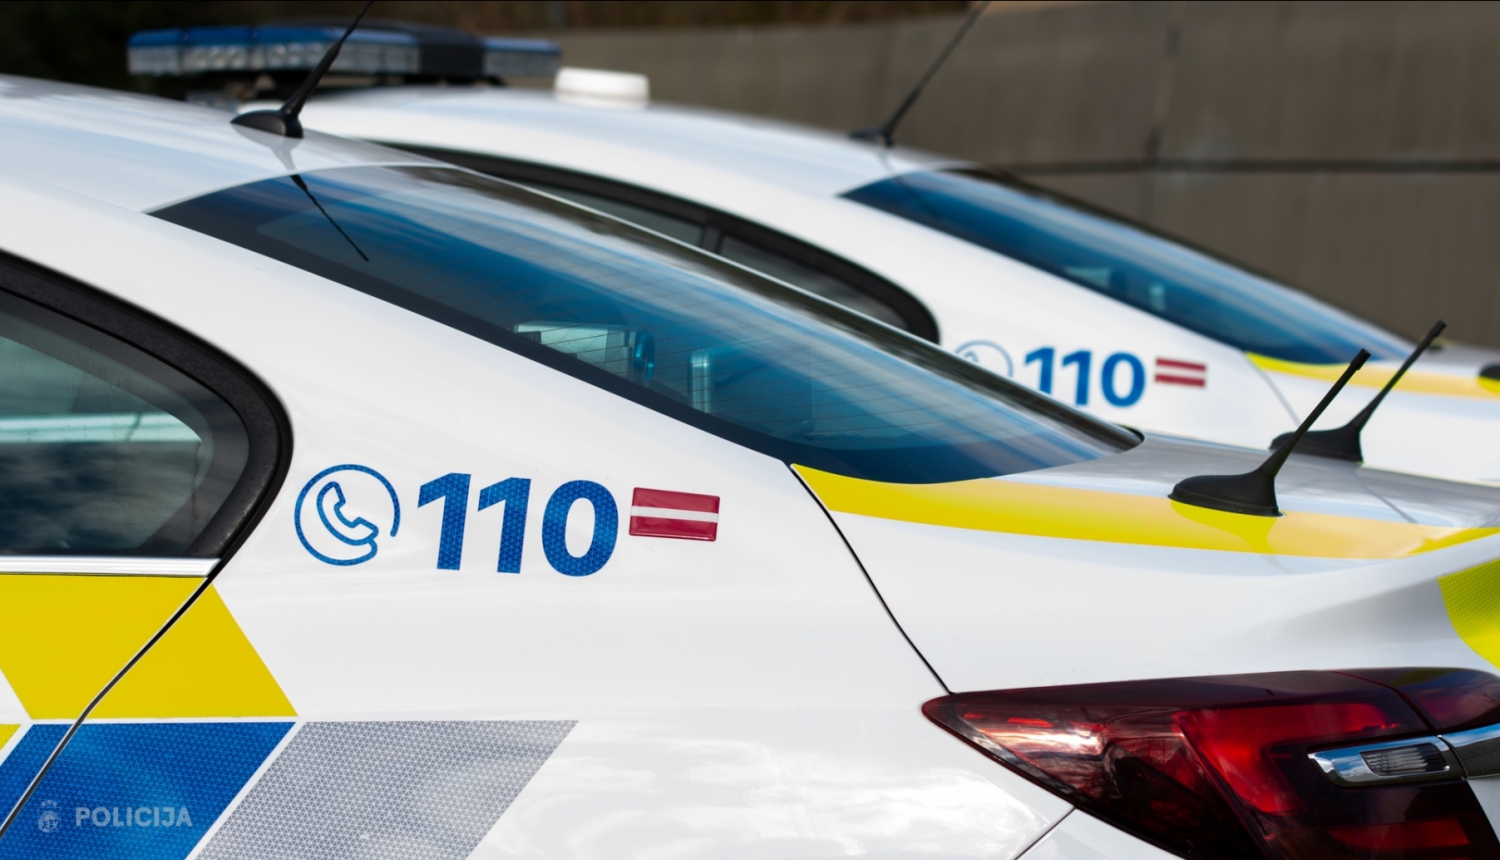 Valsts policijas automašīna, uz kuras redzams uzraksts "110"